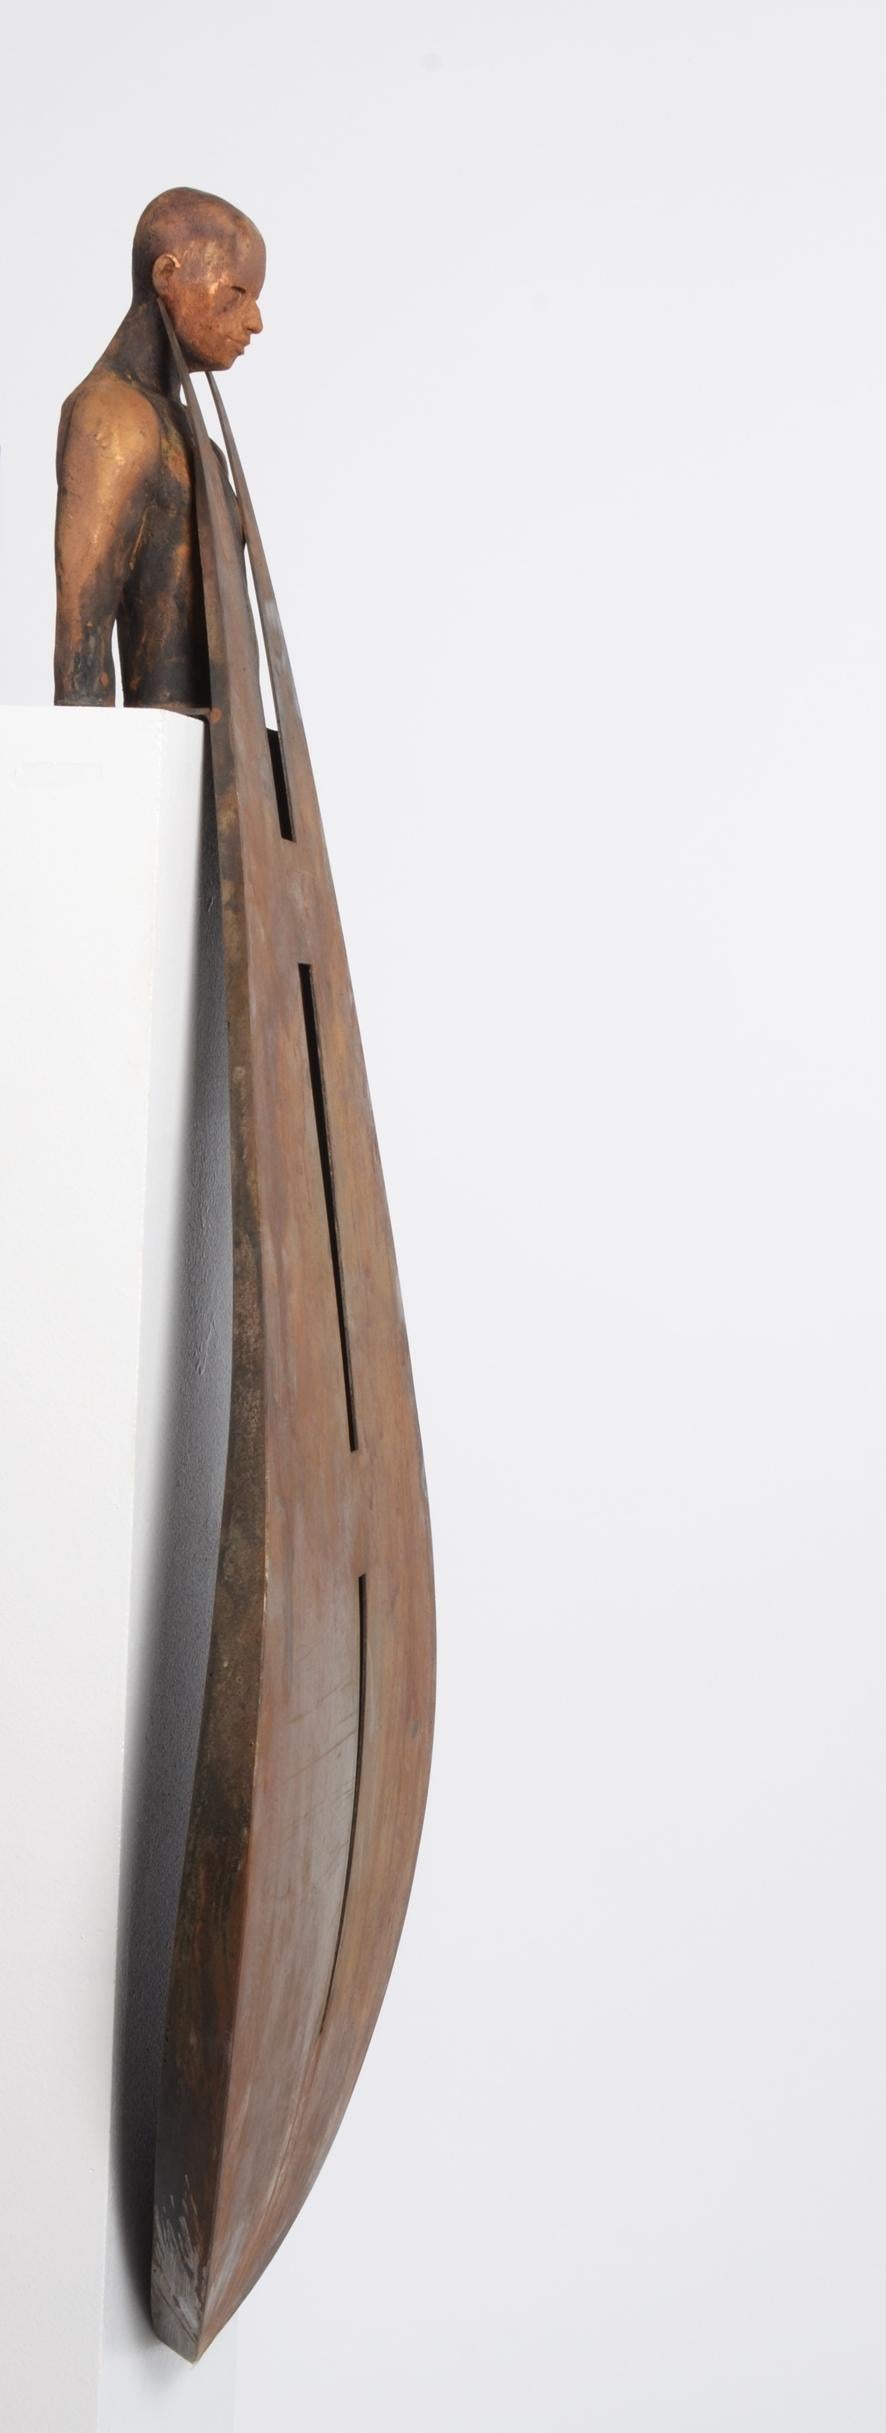 Milenium II - Contemporary Sculpture by Jesus Curia Perez